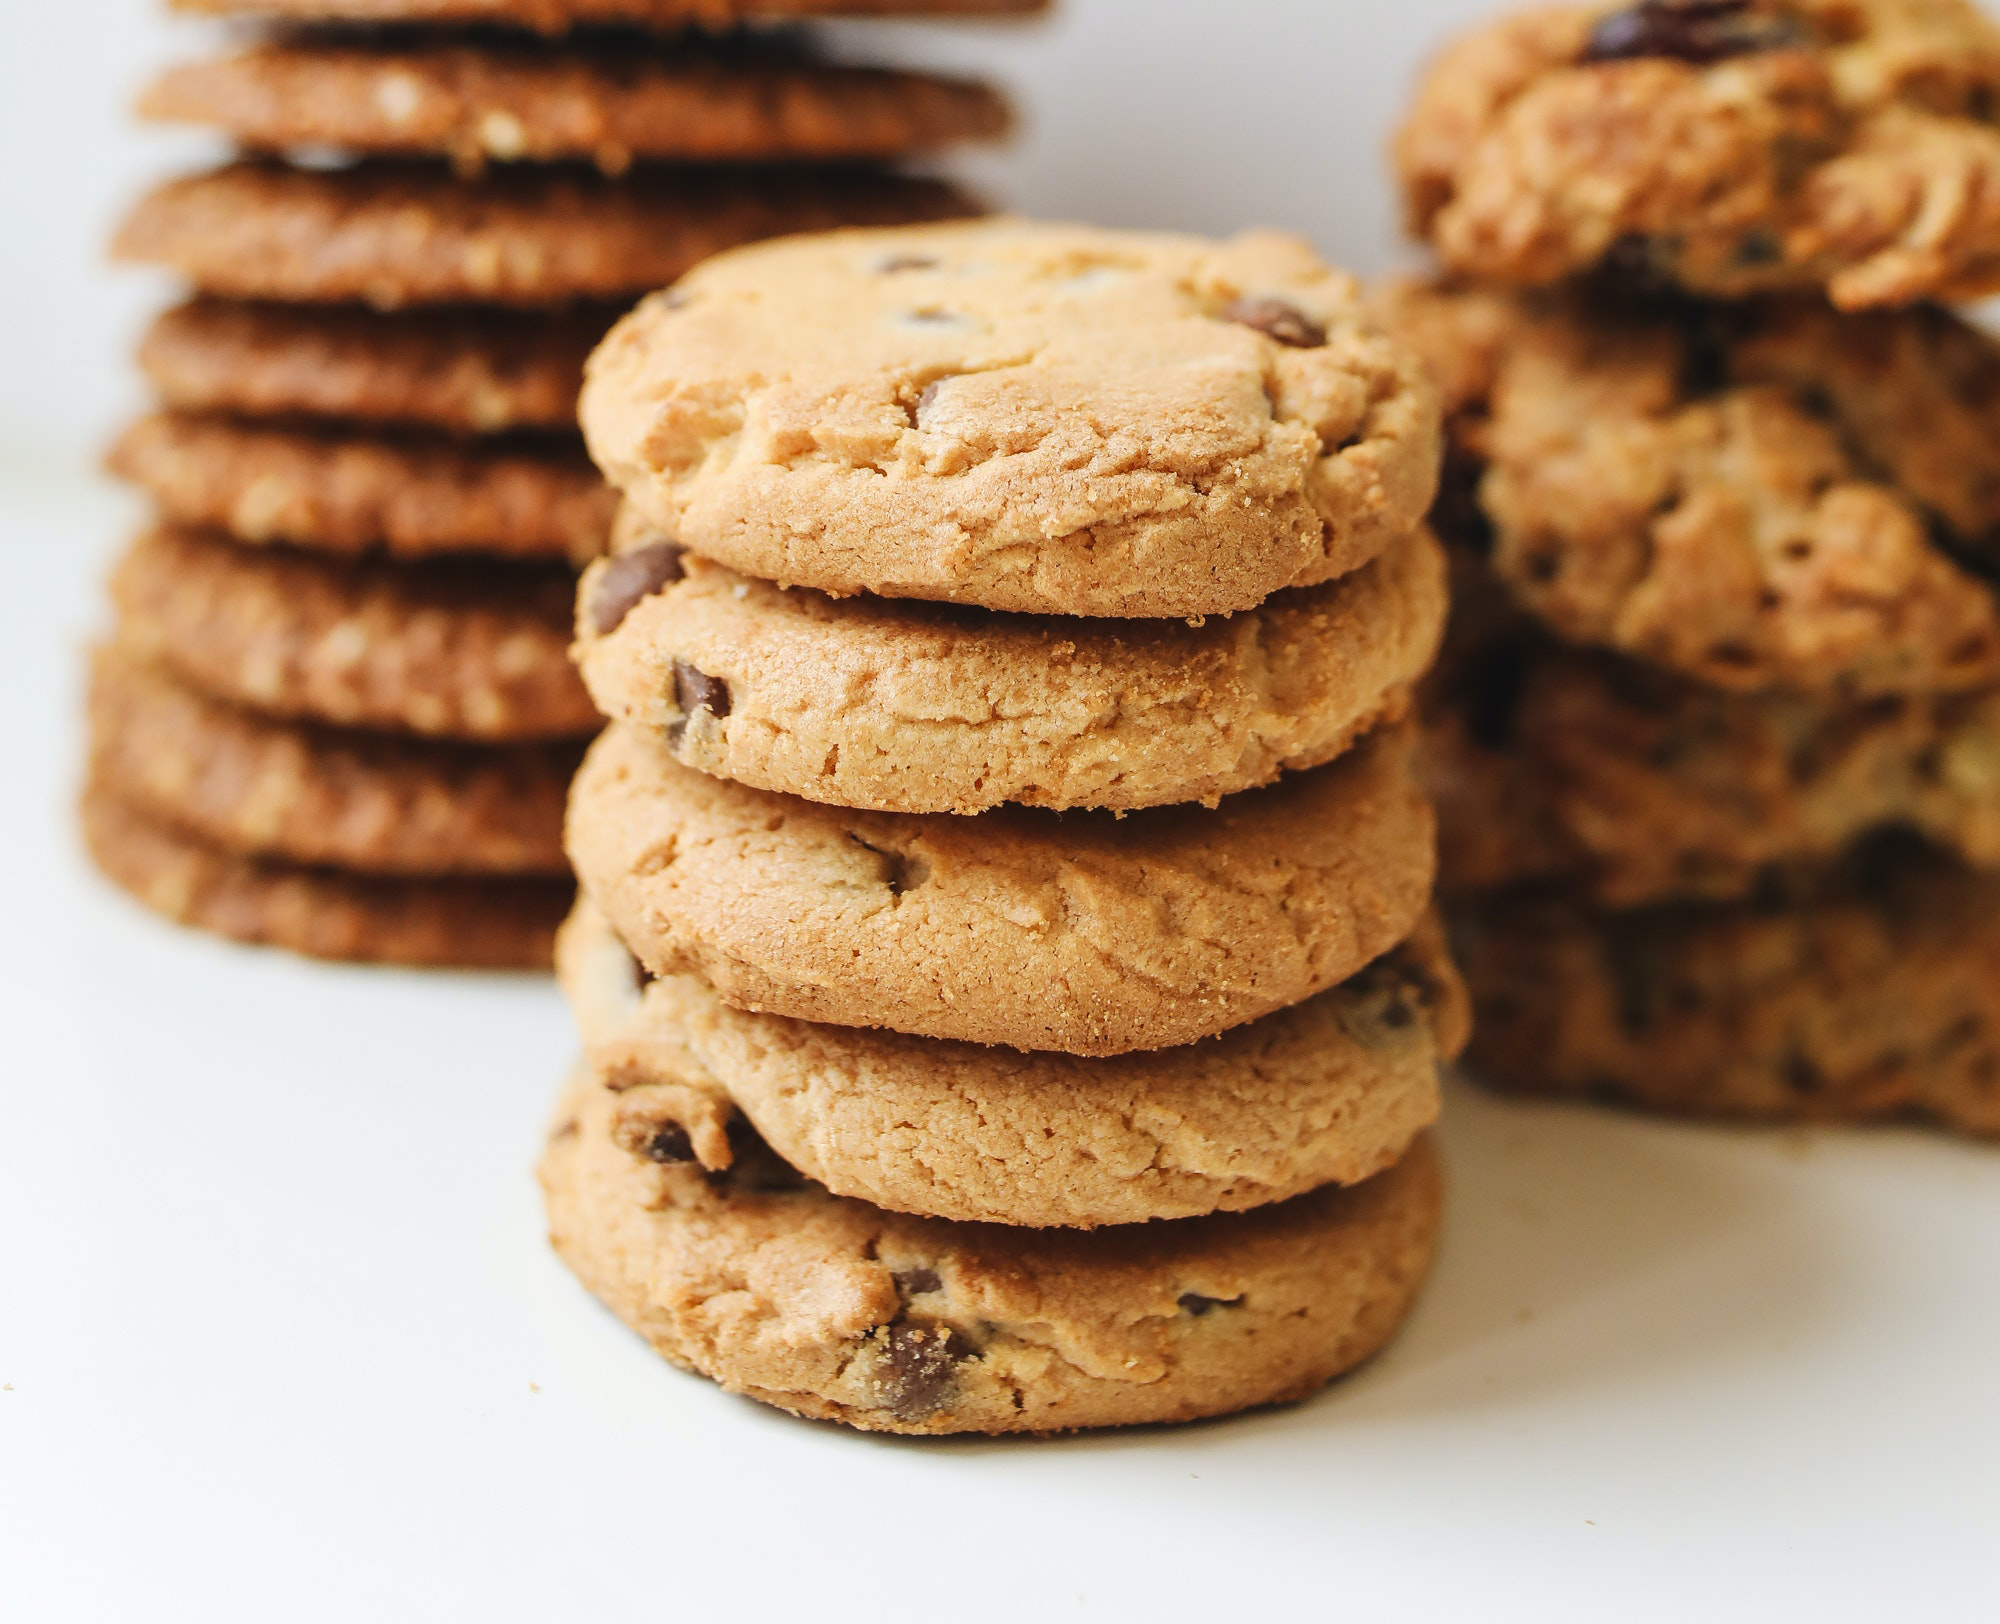 Regulación de cookies, COVID19 y protección de datos